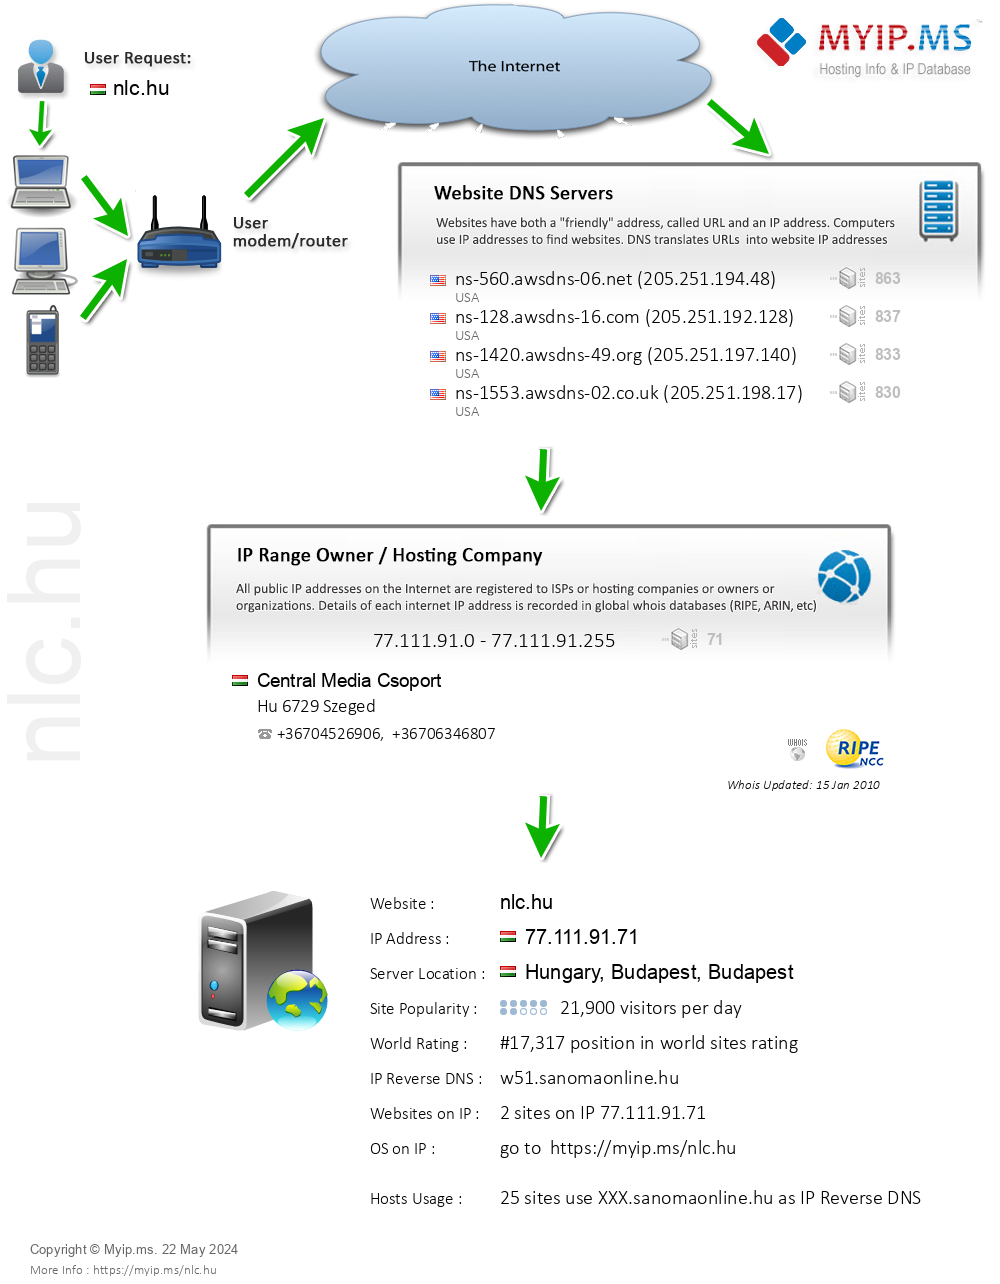 Nlc.hu - Website Hosting Visual IP Diagram